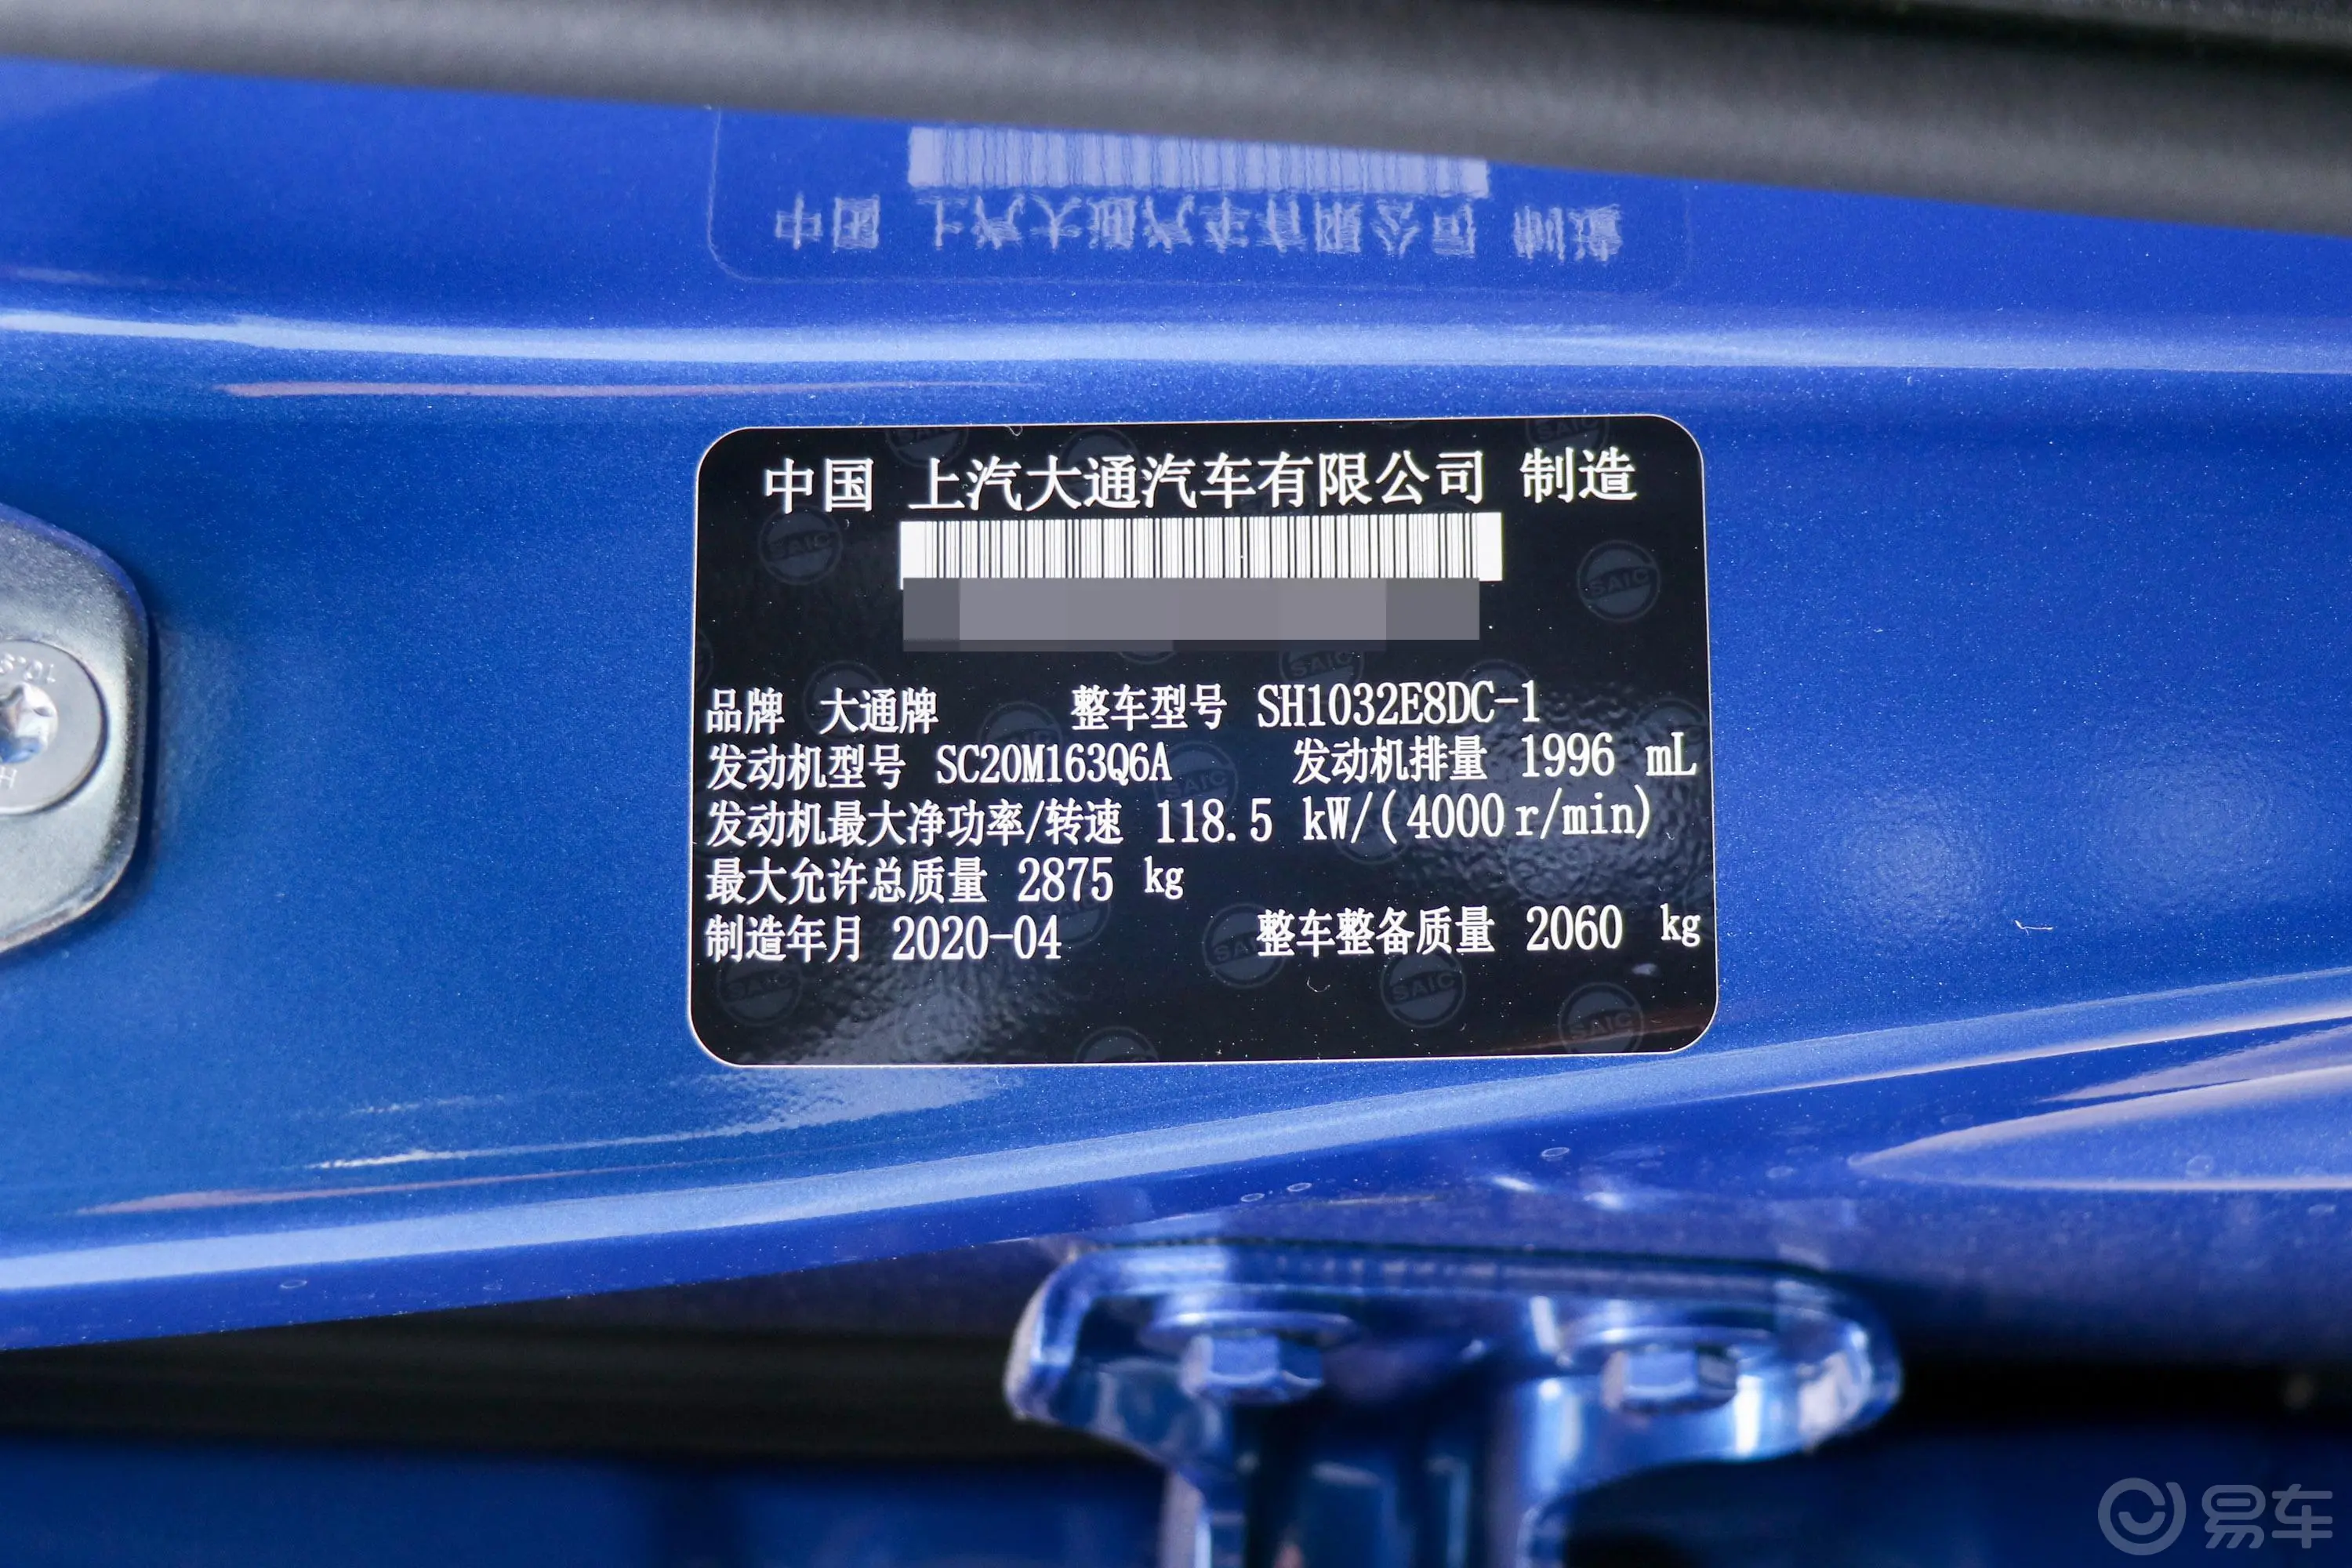 大通T702.0T 自动四驱双排长厢纪念版 柴油车辆信息铭牌